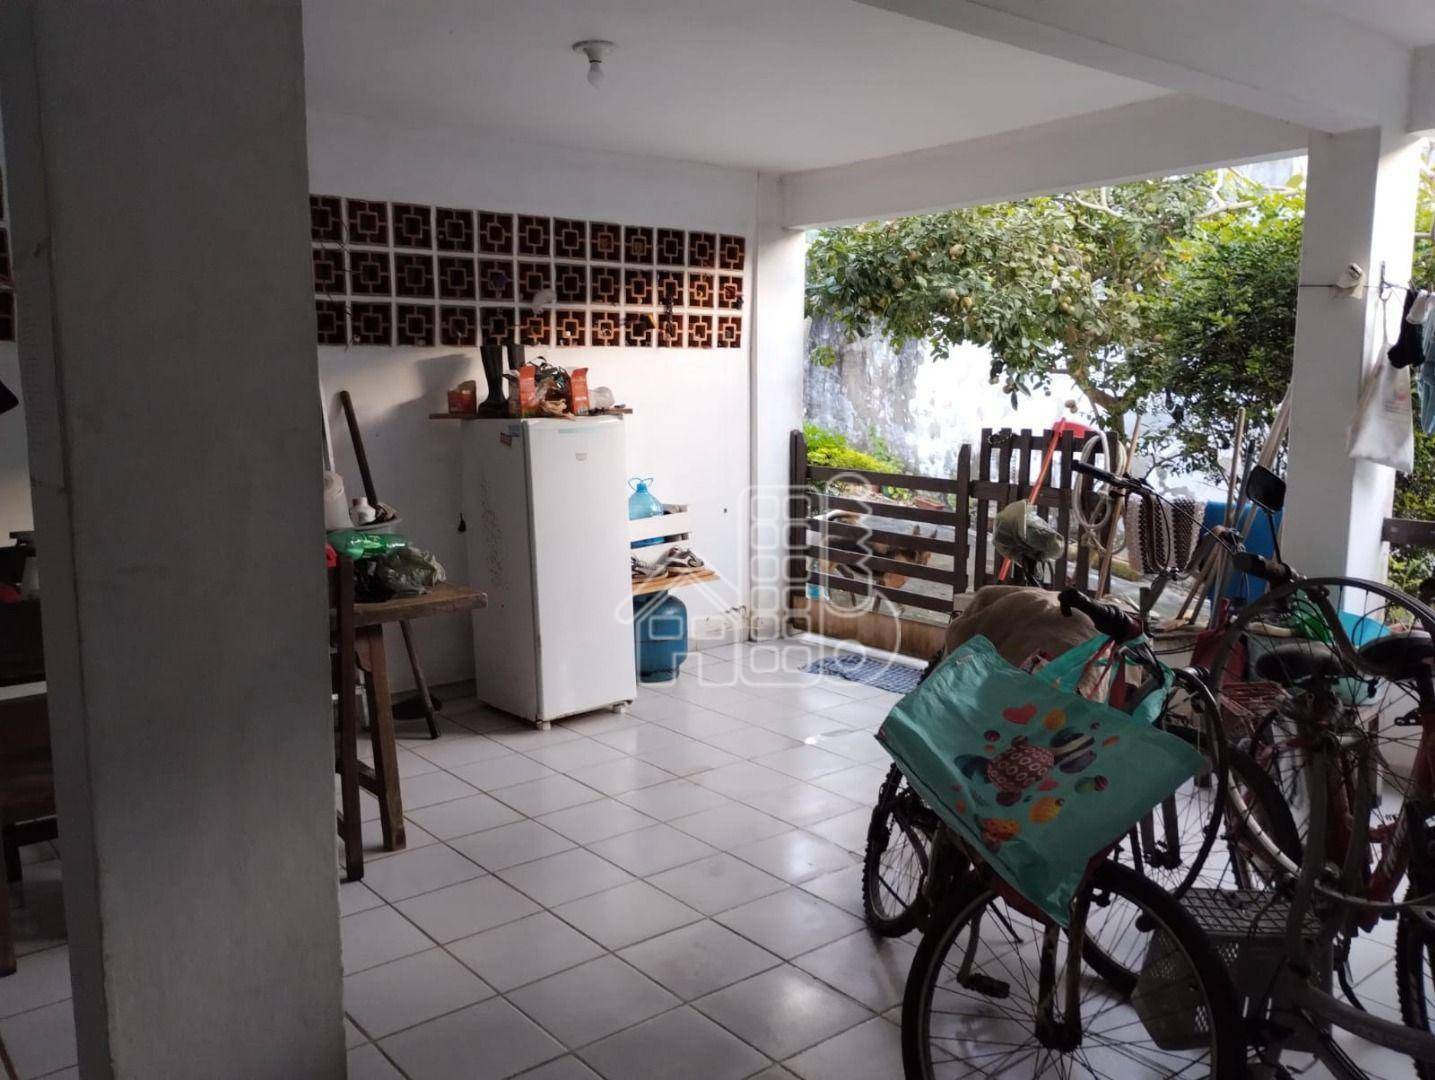 Casa com 3 dormitórios para alugar, 240 m² por R$ 2.630,00/mês - Recanto de Itaipuaçu - Maricá/RJ